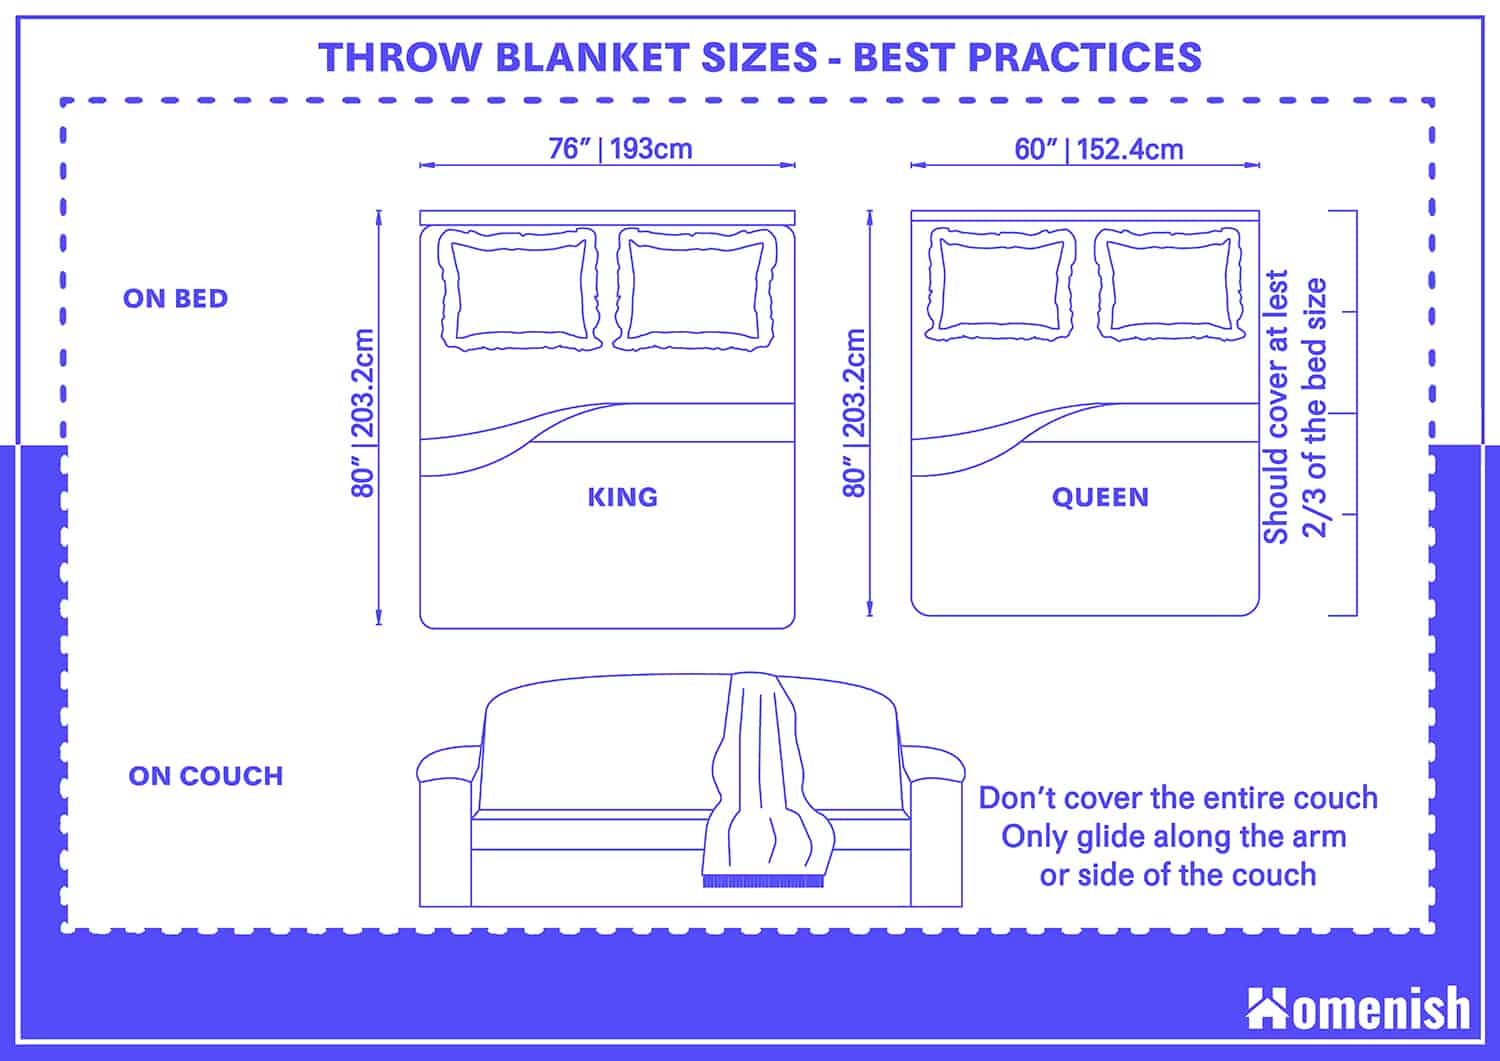 投擲毛毯的尺寸-最佳實踐